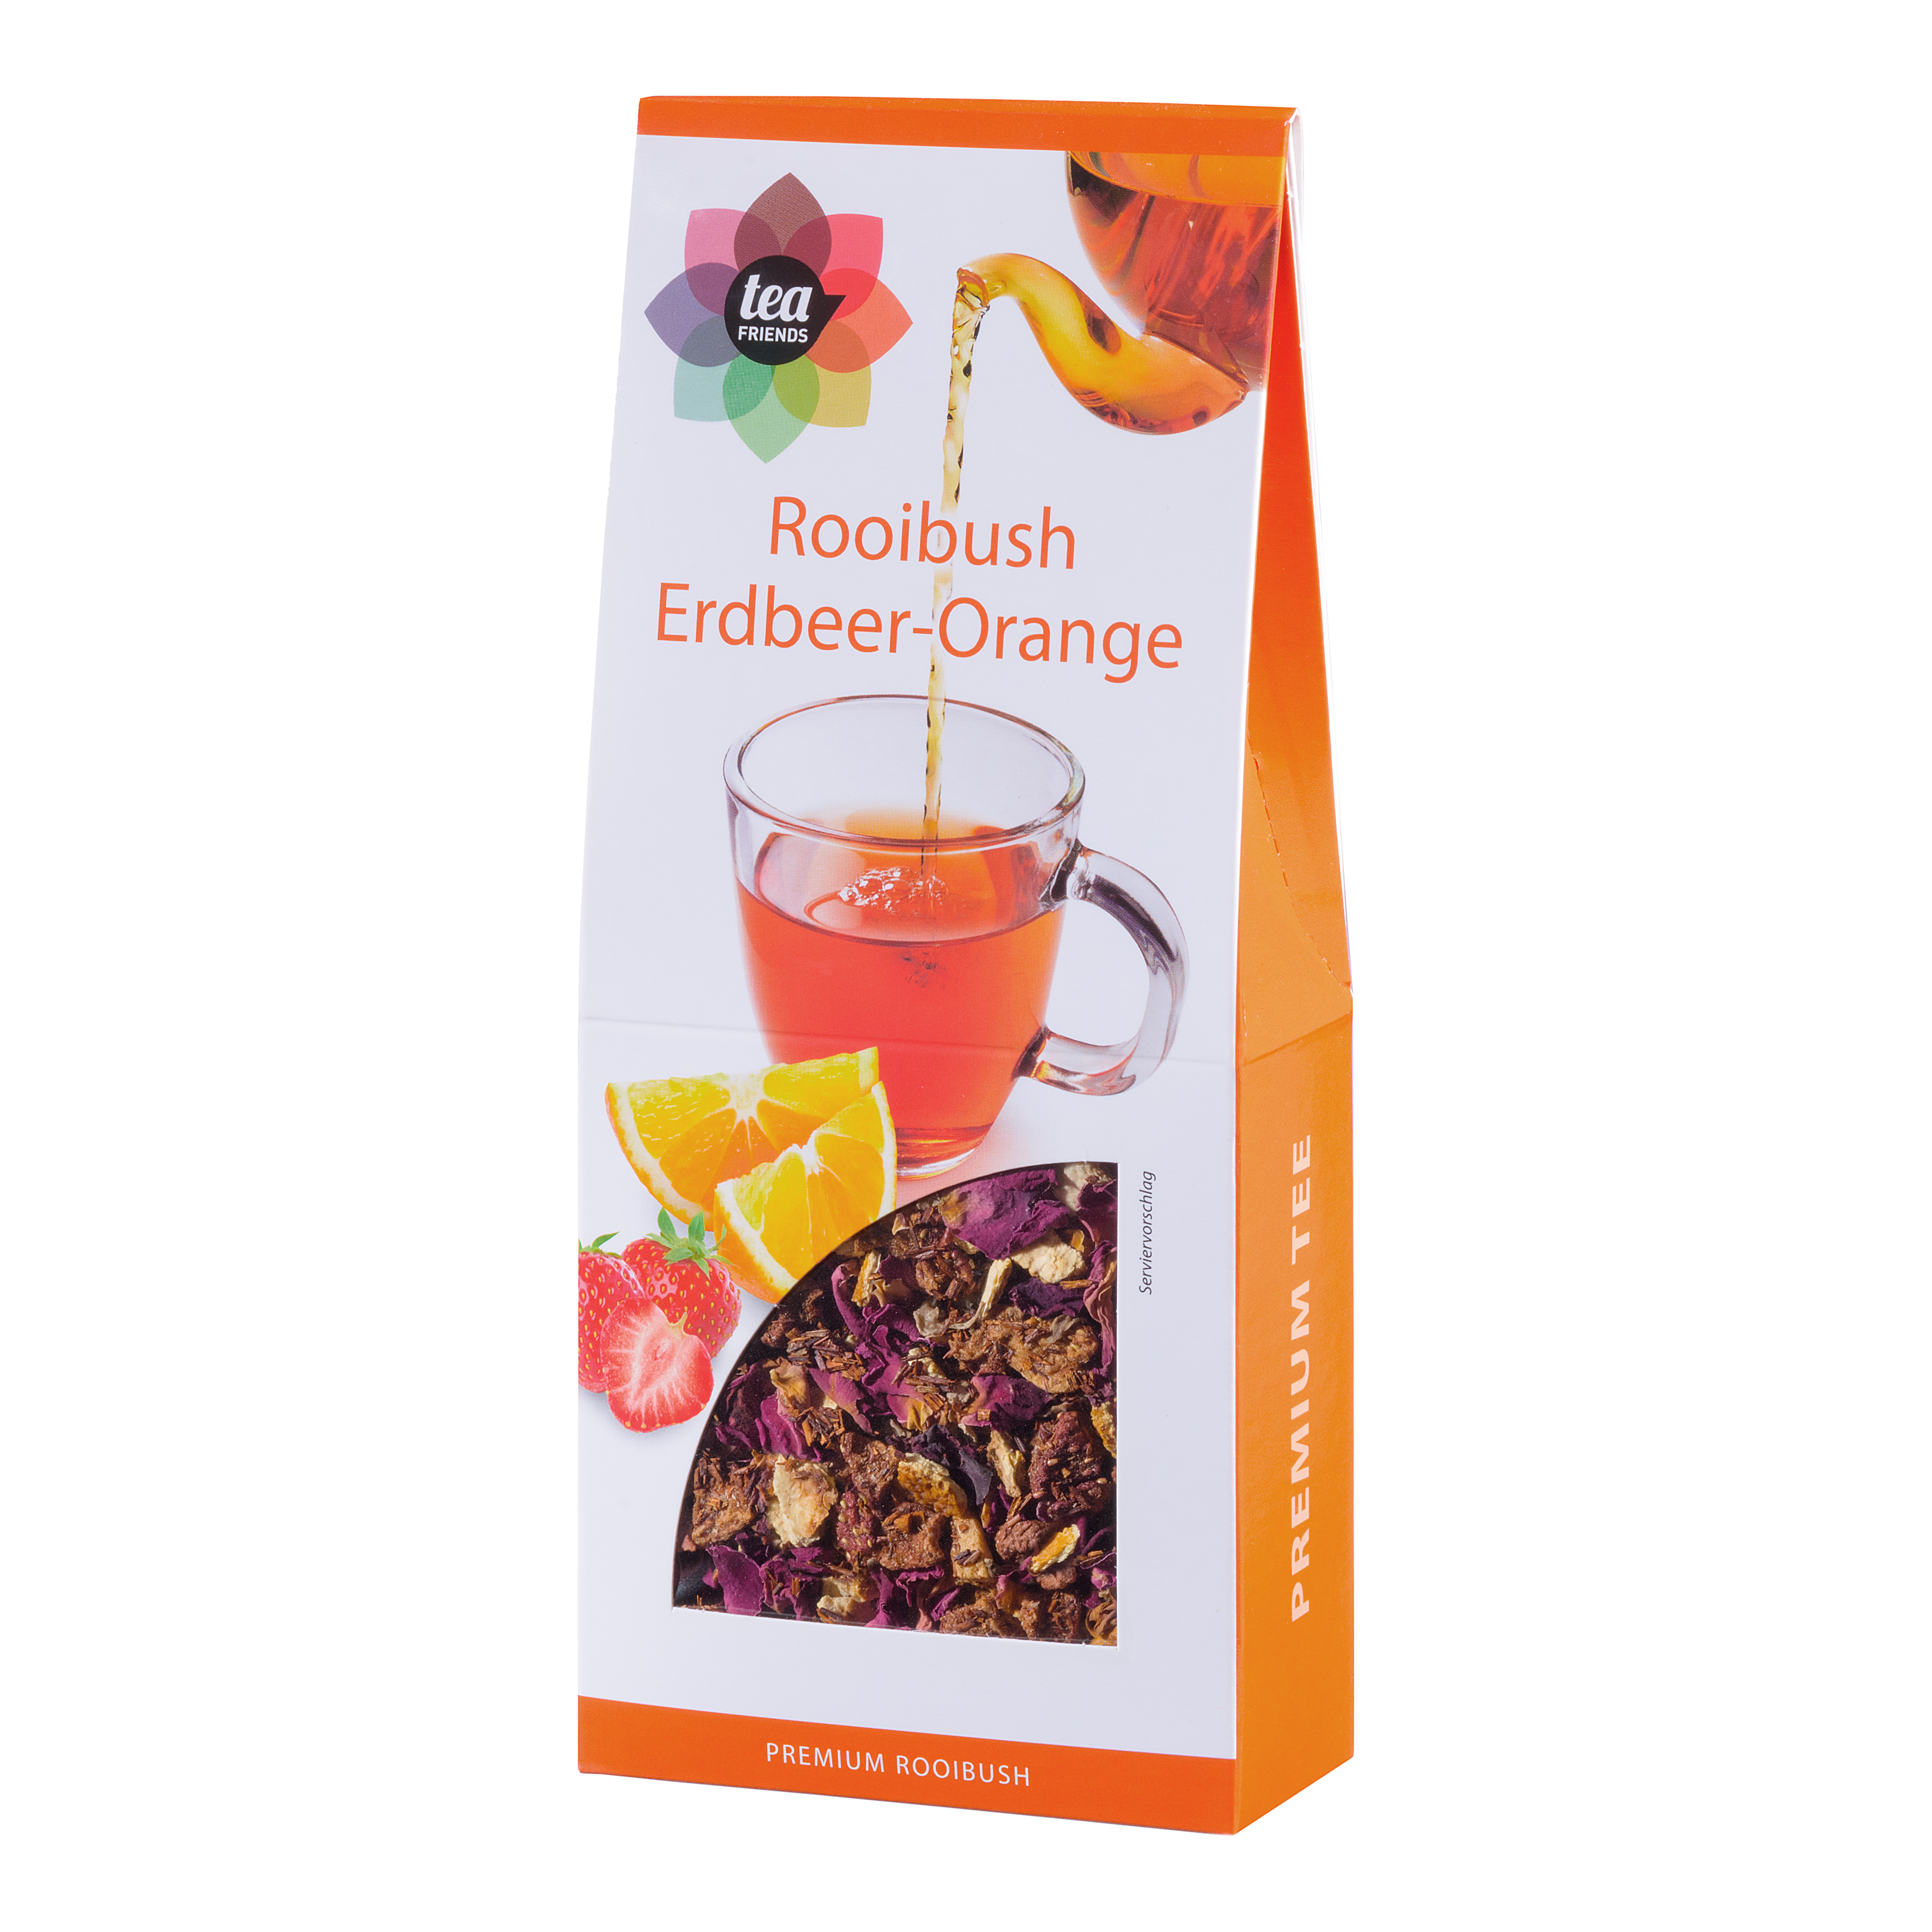 90g Erdbeer-Orange loser aromatisierter Rooibos Tee